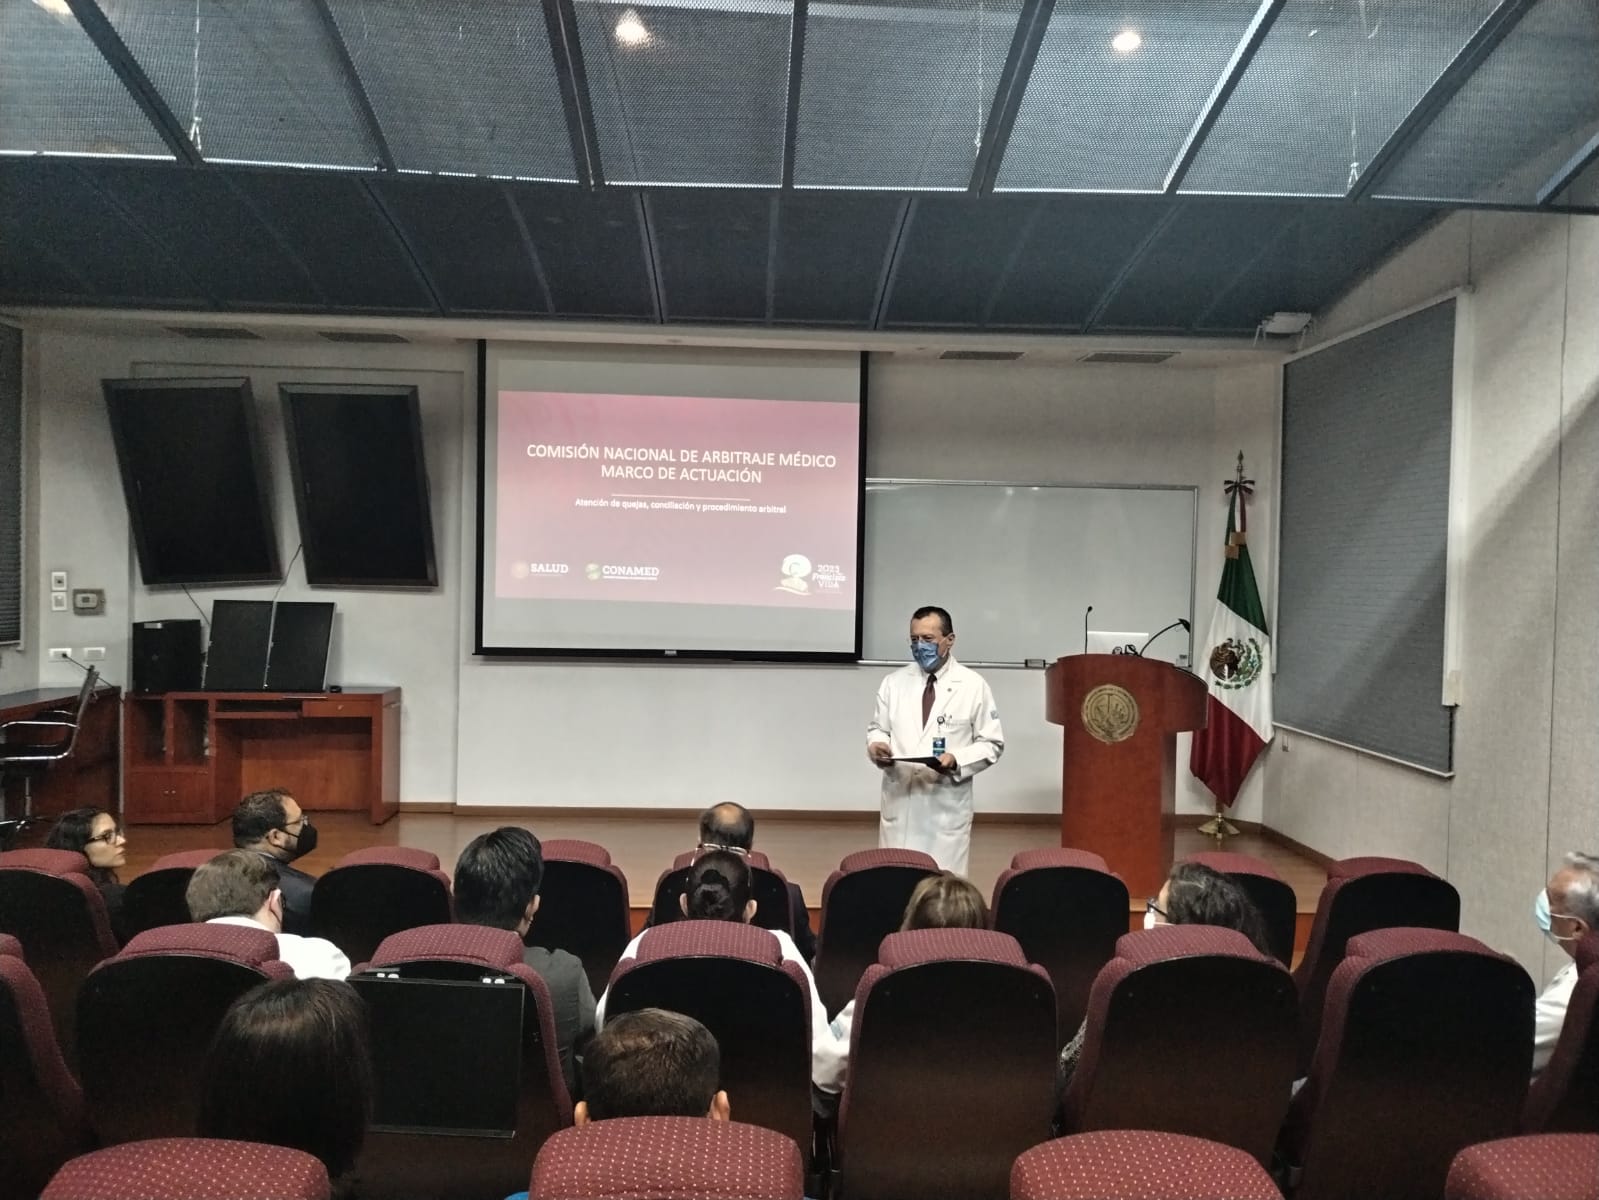 El Dr. José Sifuentes Osornio, Director General del Instituto Nacional de Ciencias Médicas y Nutrición "Salvador Zubirán" recibió al equipo directivo de CONAMED